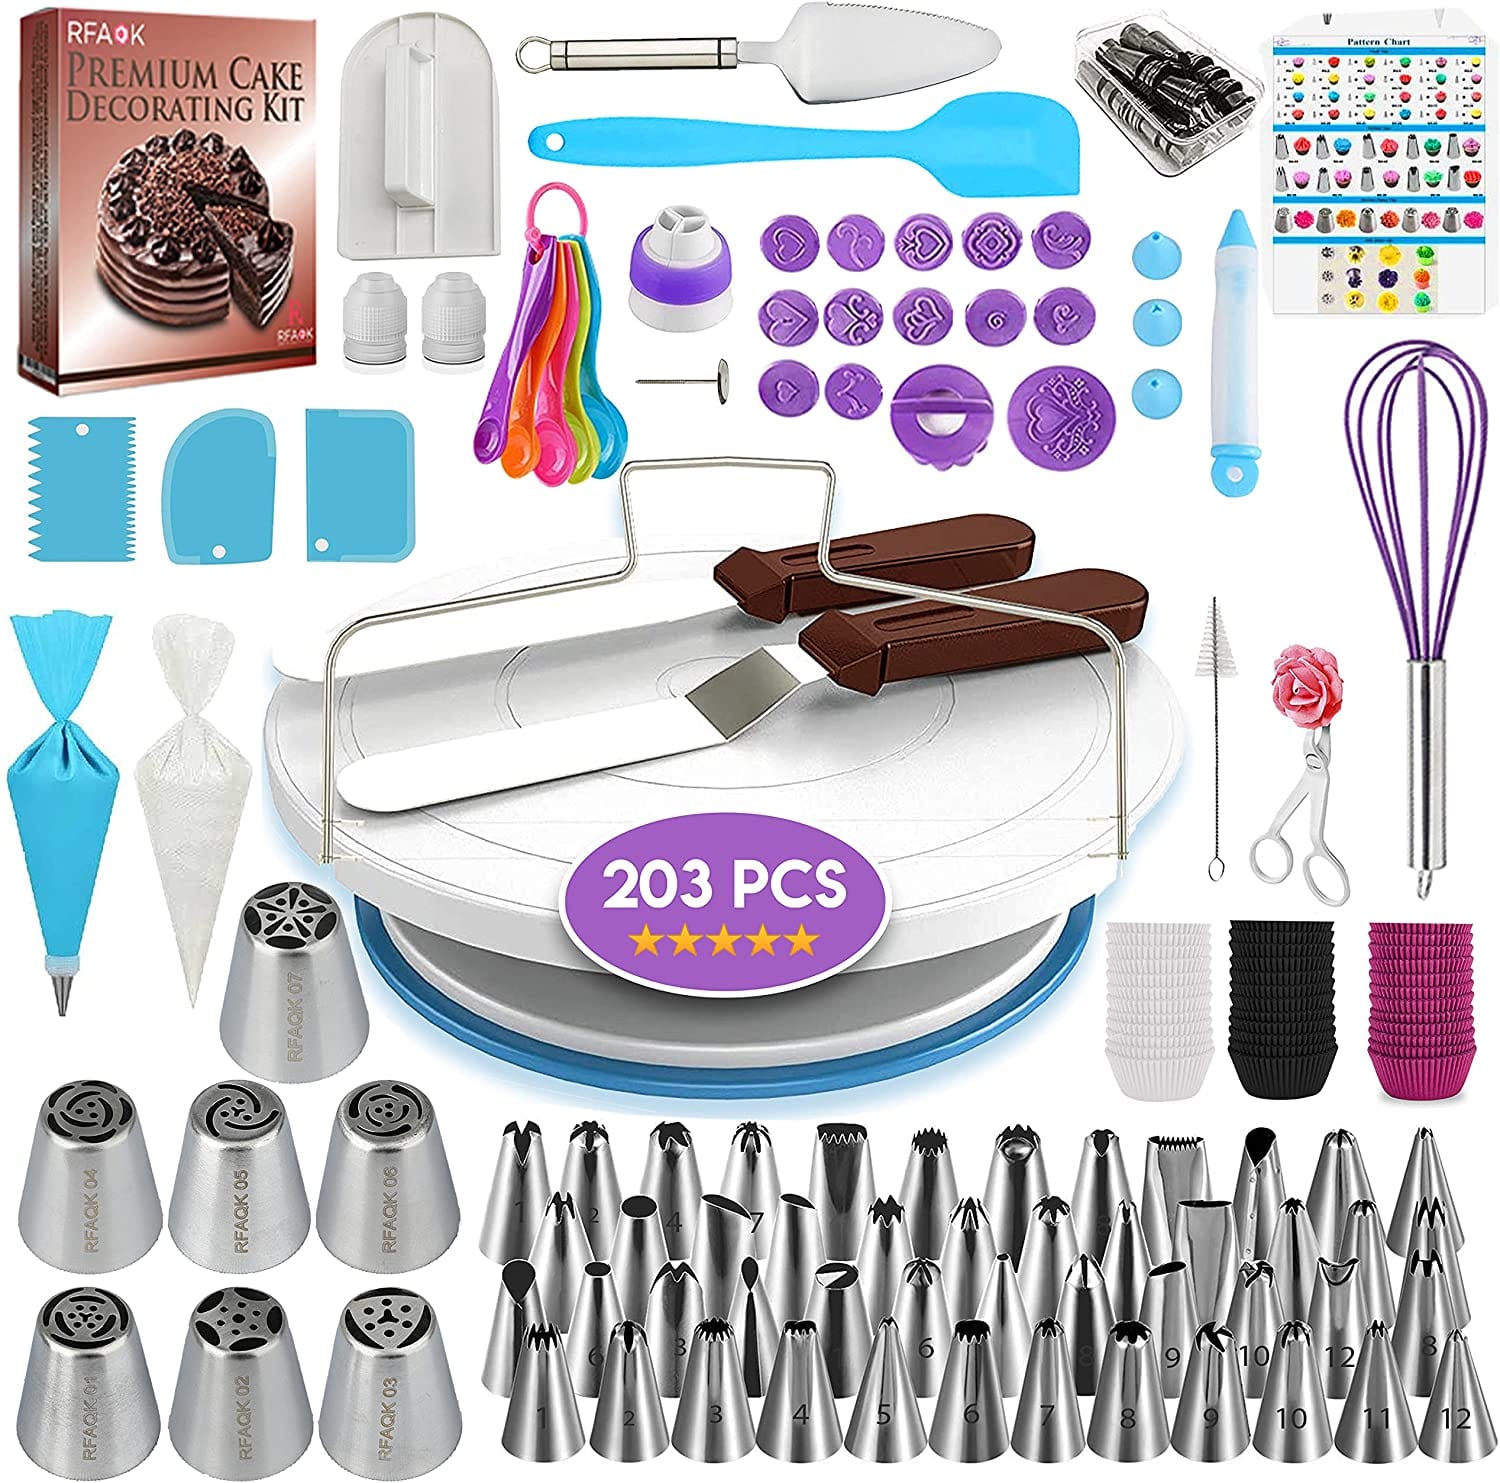 RFAOK Kitchenware RFAOK - Cake Decorating Supplies Kit 203 PCs